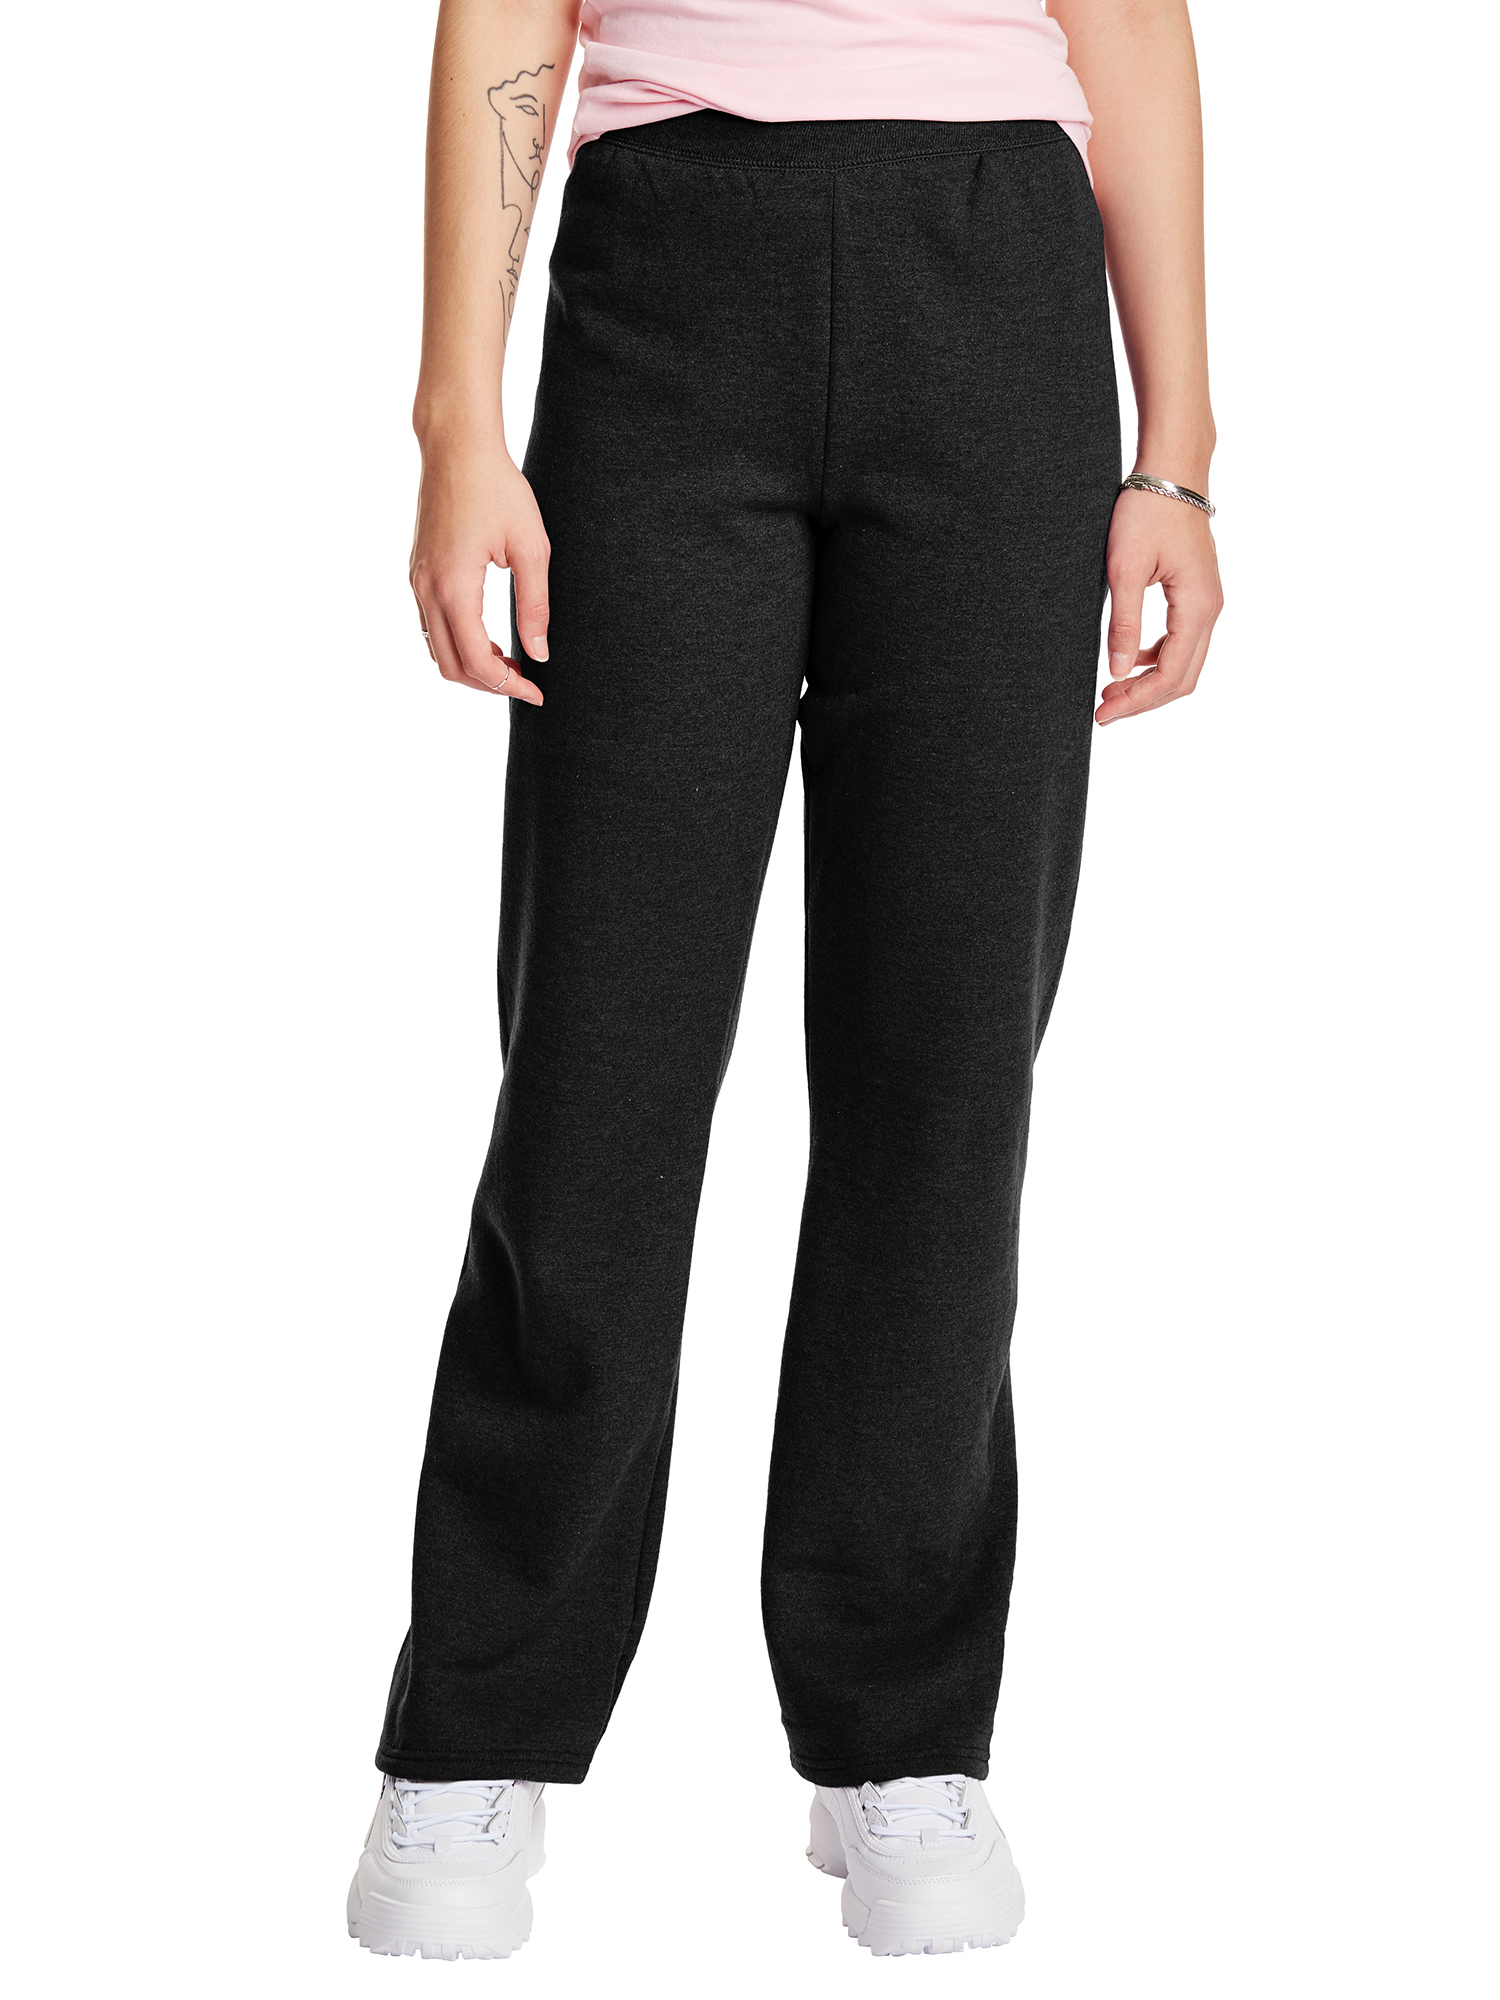 Hanes ComfortSoft EcoSmart Women's Open Bottom Fleece Sweatpants, Sizes S-XXL and Petite - image 1 of 5